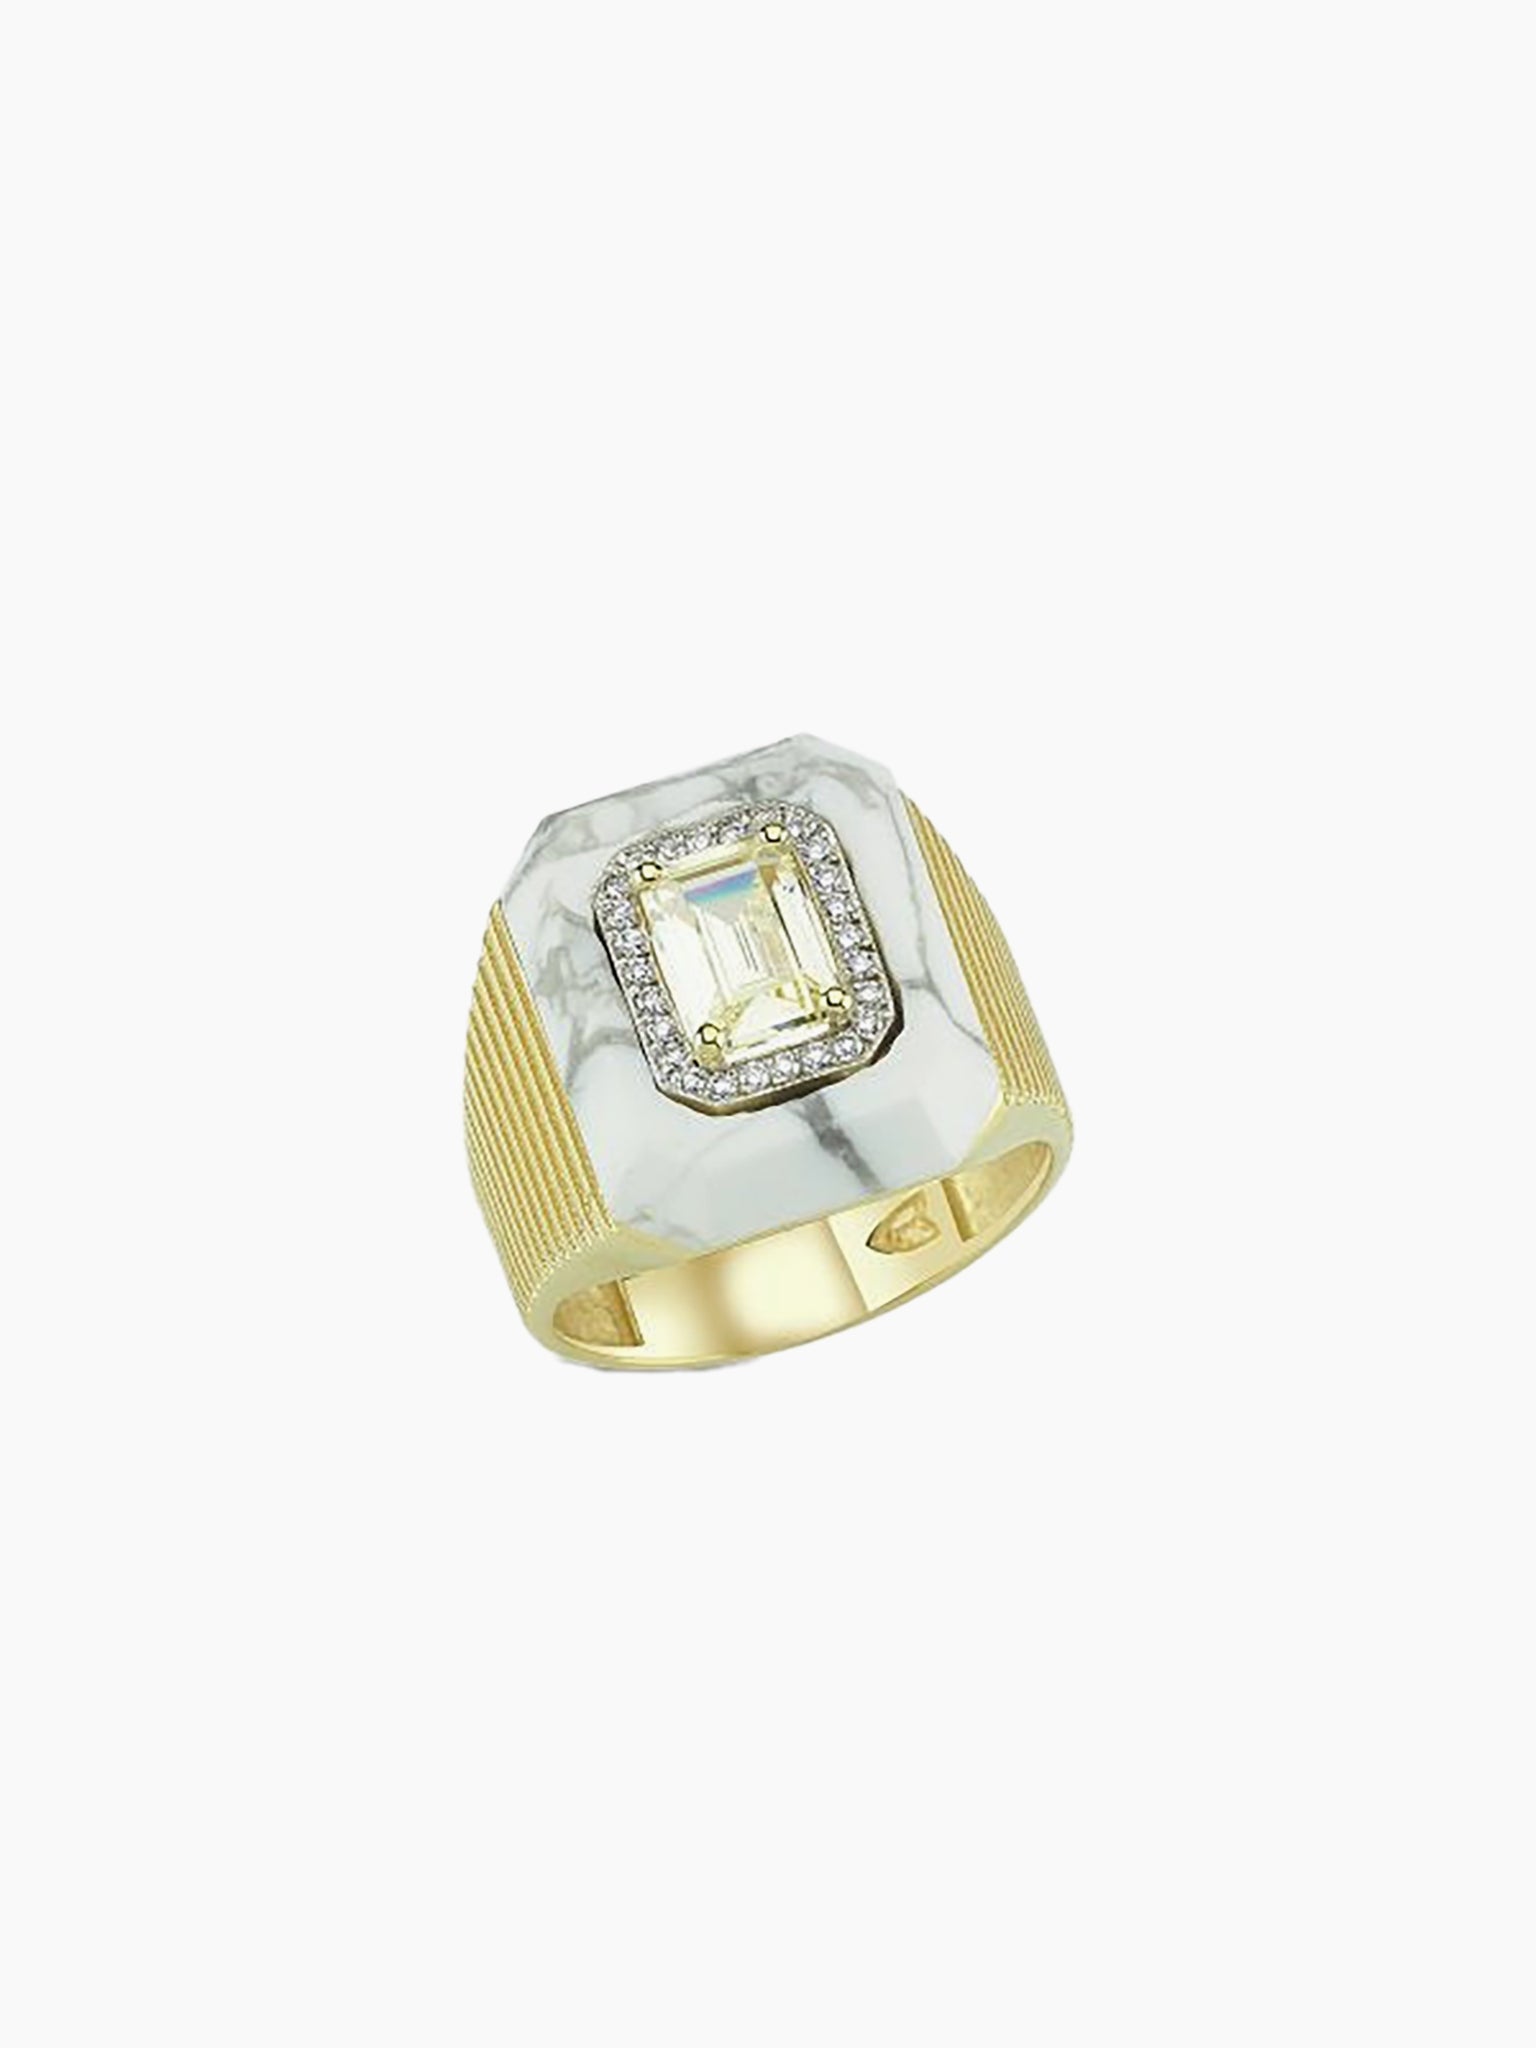 MELIS GORAL La Linea Yellow Topaz Diamond Ring